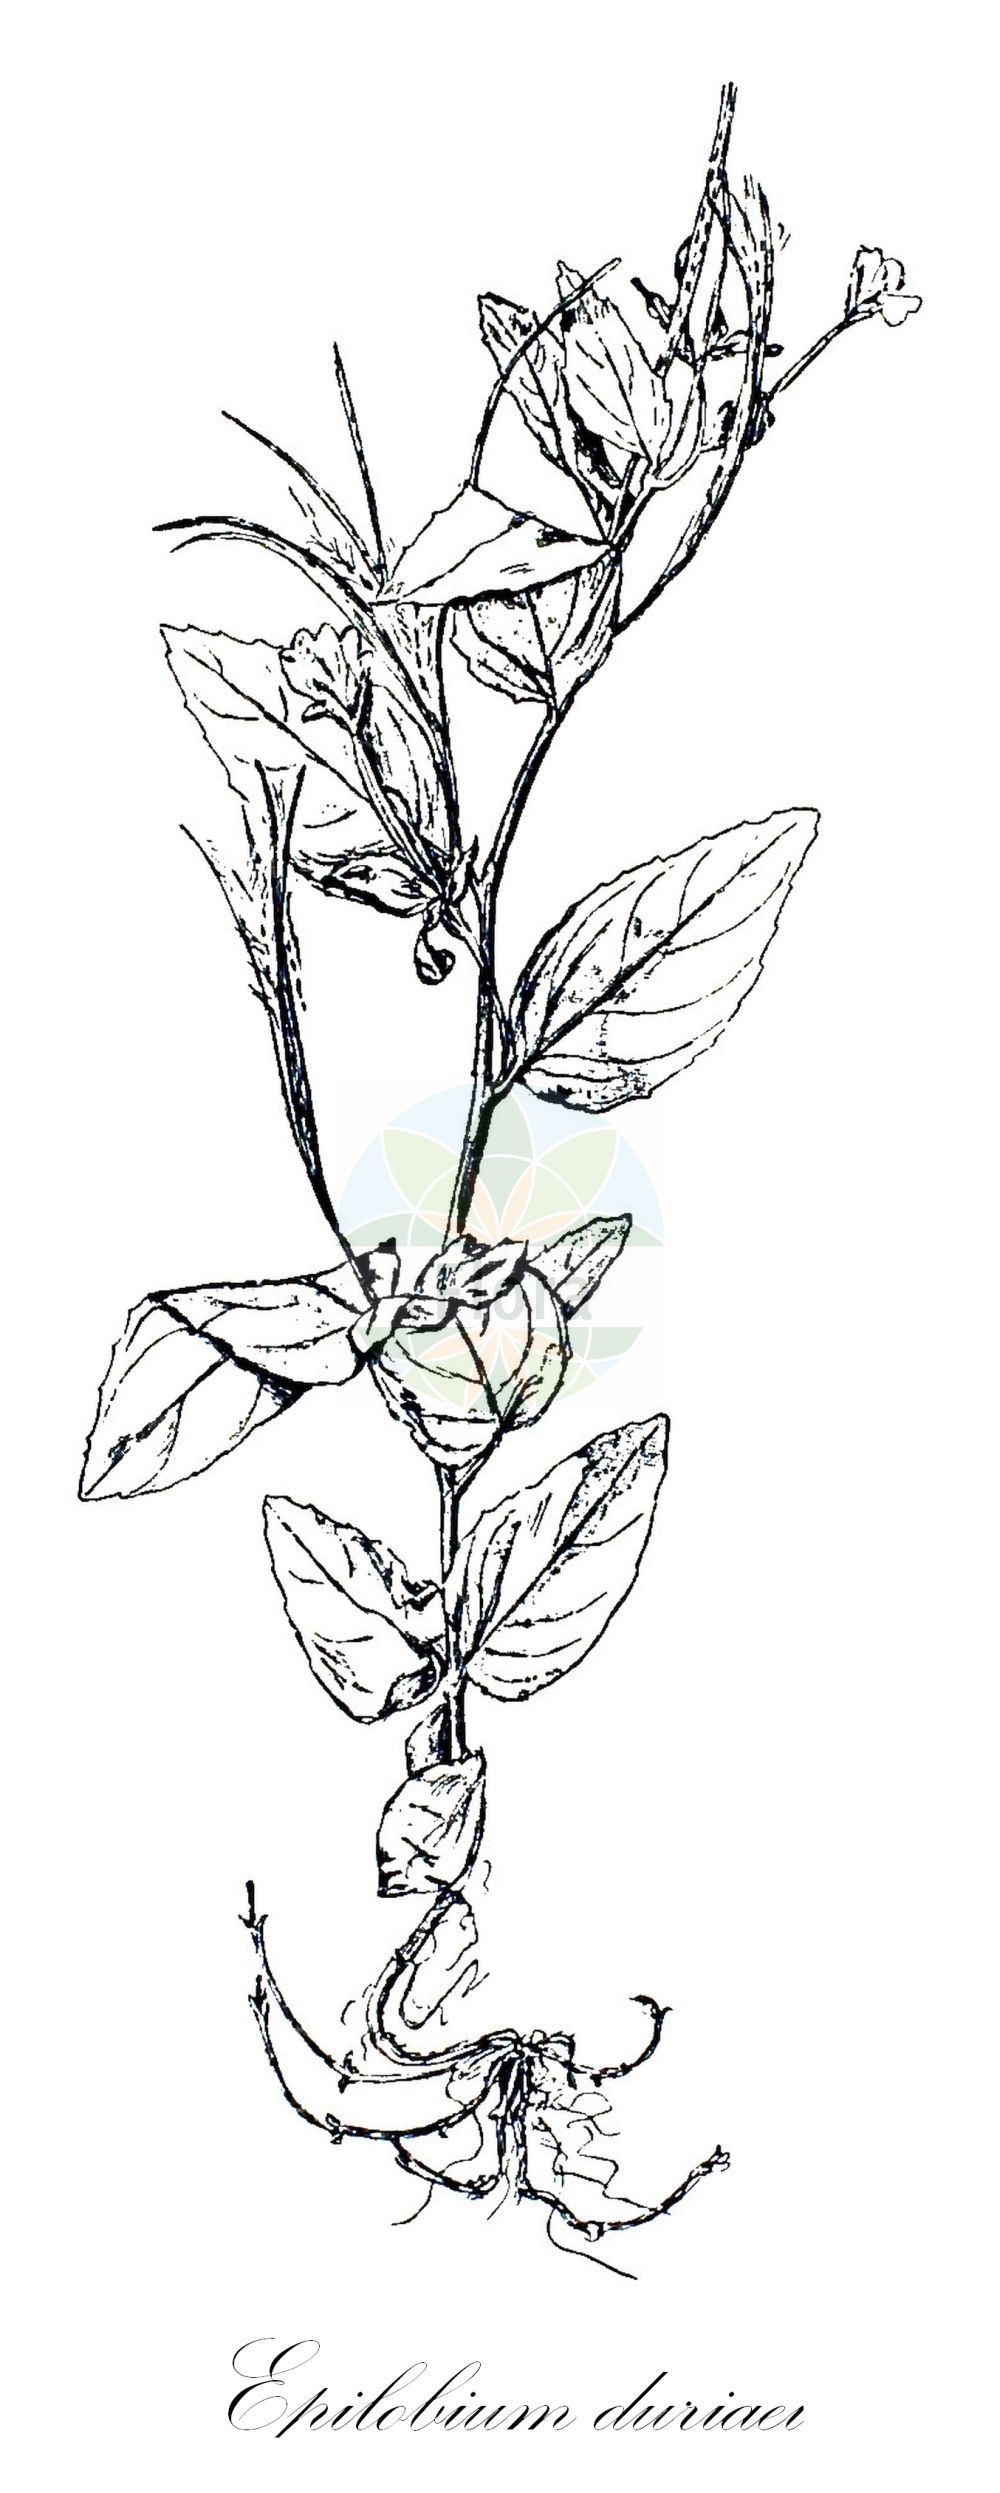 Historische Abbildung von Epilobium duriaei (Durieus Weidenröschen - Western Willowherb). Das Bild zeigt Blatt, Bluete, Frucht und Same. ---- Historical Drawing of Epilobium duriaei (Durieus Weidenröschen - Western Willowherb). The image is showing leaf, flower, fruit and seed.(Epilobium duriaei,Durieus Weidenröschen,Western Willowherb,Epilobium duriaei,Durieus Weidenroeschen,Western Willowherb,Epilobium,Weidenröschen,Willowherb,Onagraceae,Nachtkerzengewächse,Evening Primrose family,Blatt,Bluete,Frucht,Same,leaf,flower,fruit,seed,Léveillé (1911))